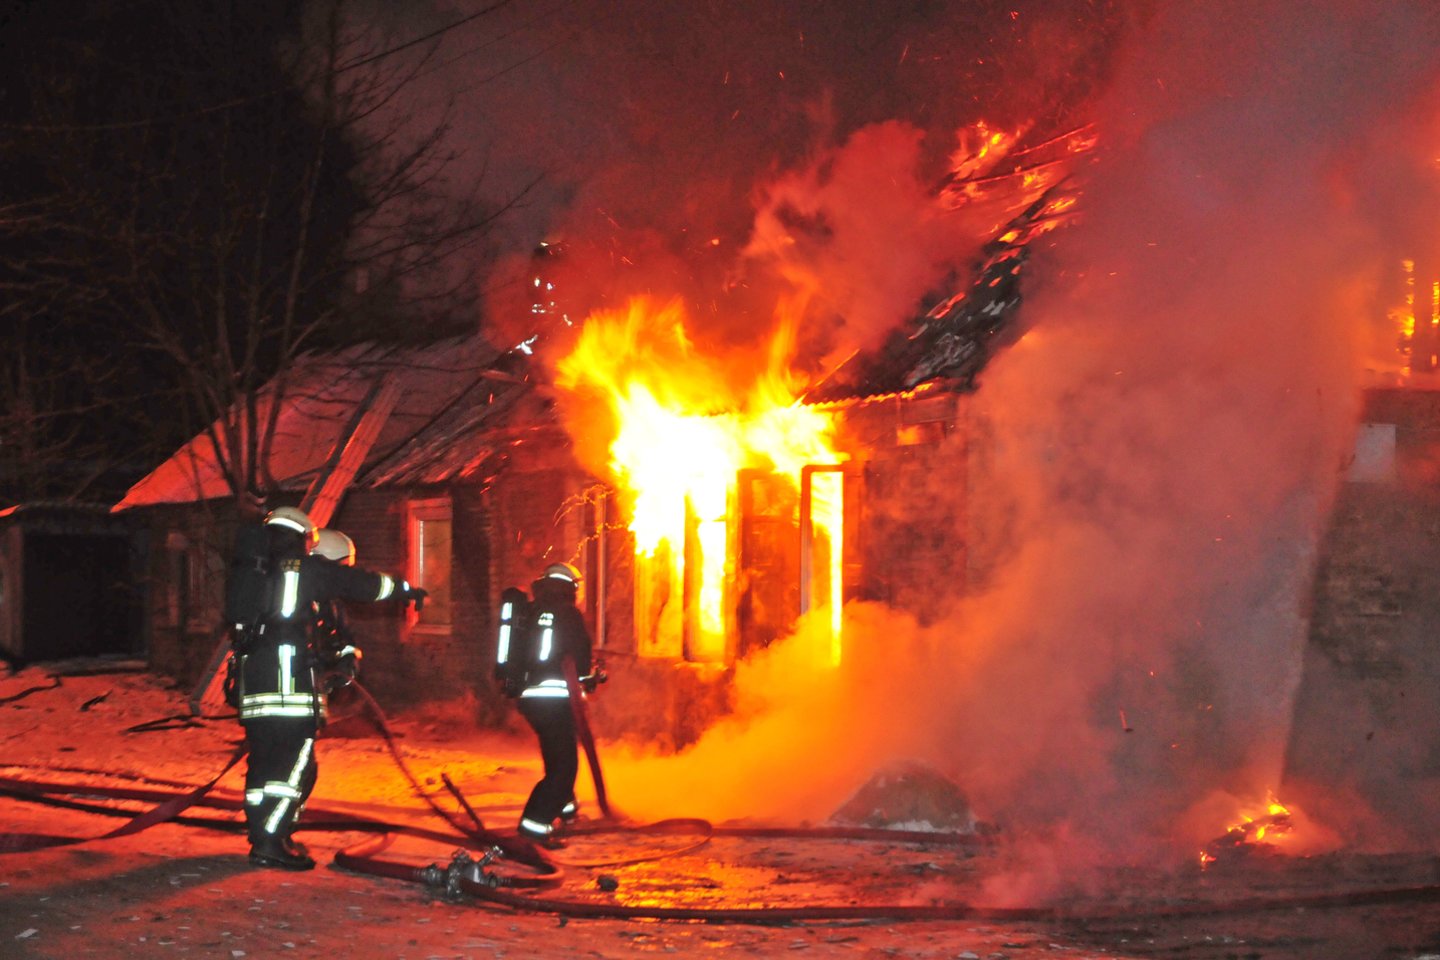  Utenos ir Trakų rajonuose šeštadienį per gaisrus žuvo du žmonės. <br> A. Vaitkevičiaus asociatyvioji nuotr. 